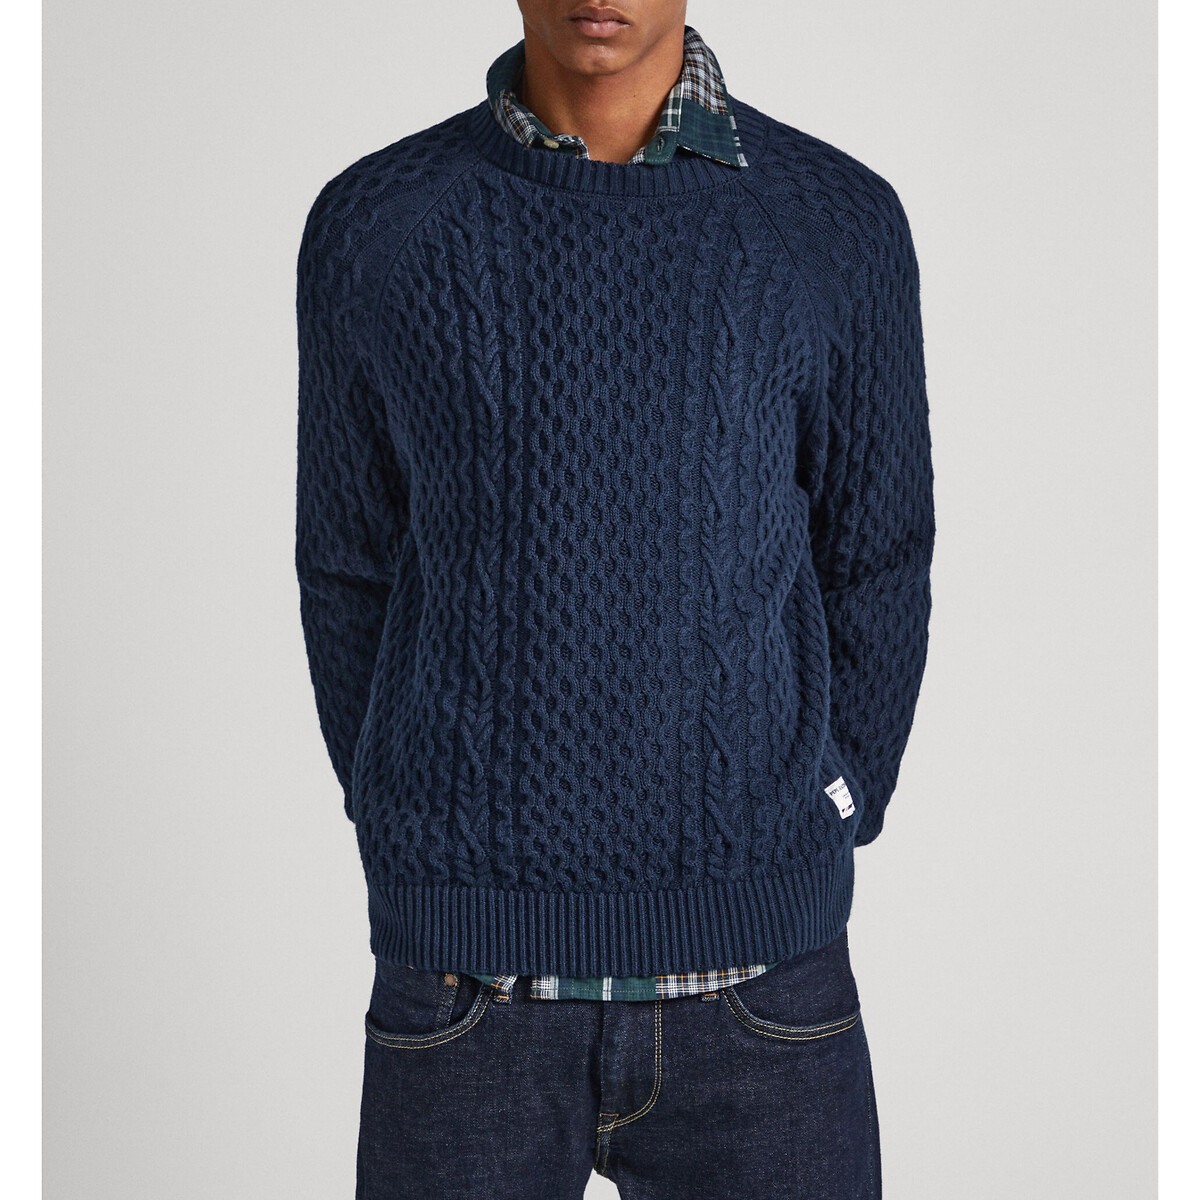 Пуловер с круглым вырезом из текстурированного трикотажа M синий пуловер с круглым вырезом из трикотажа пуантель xl синий